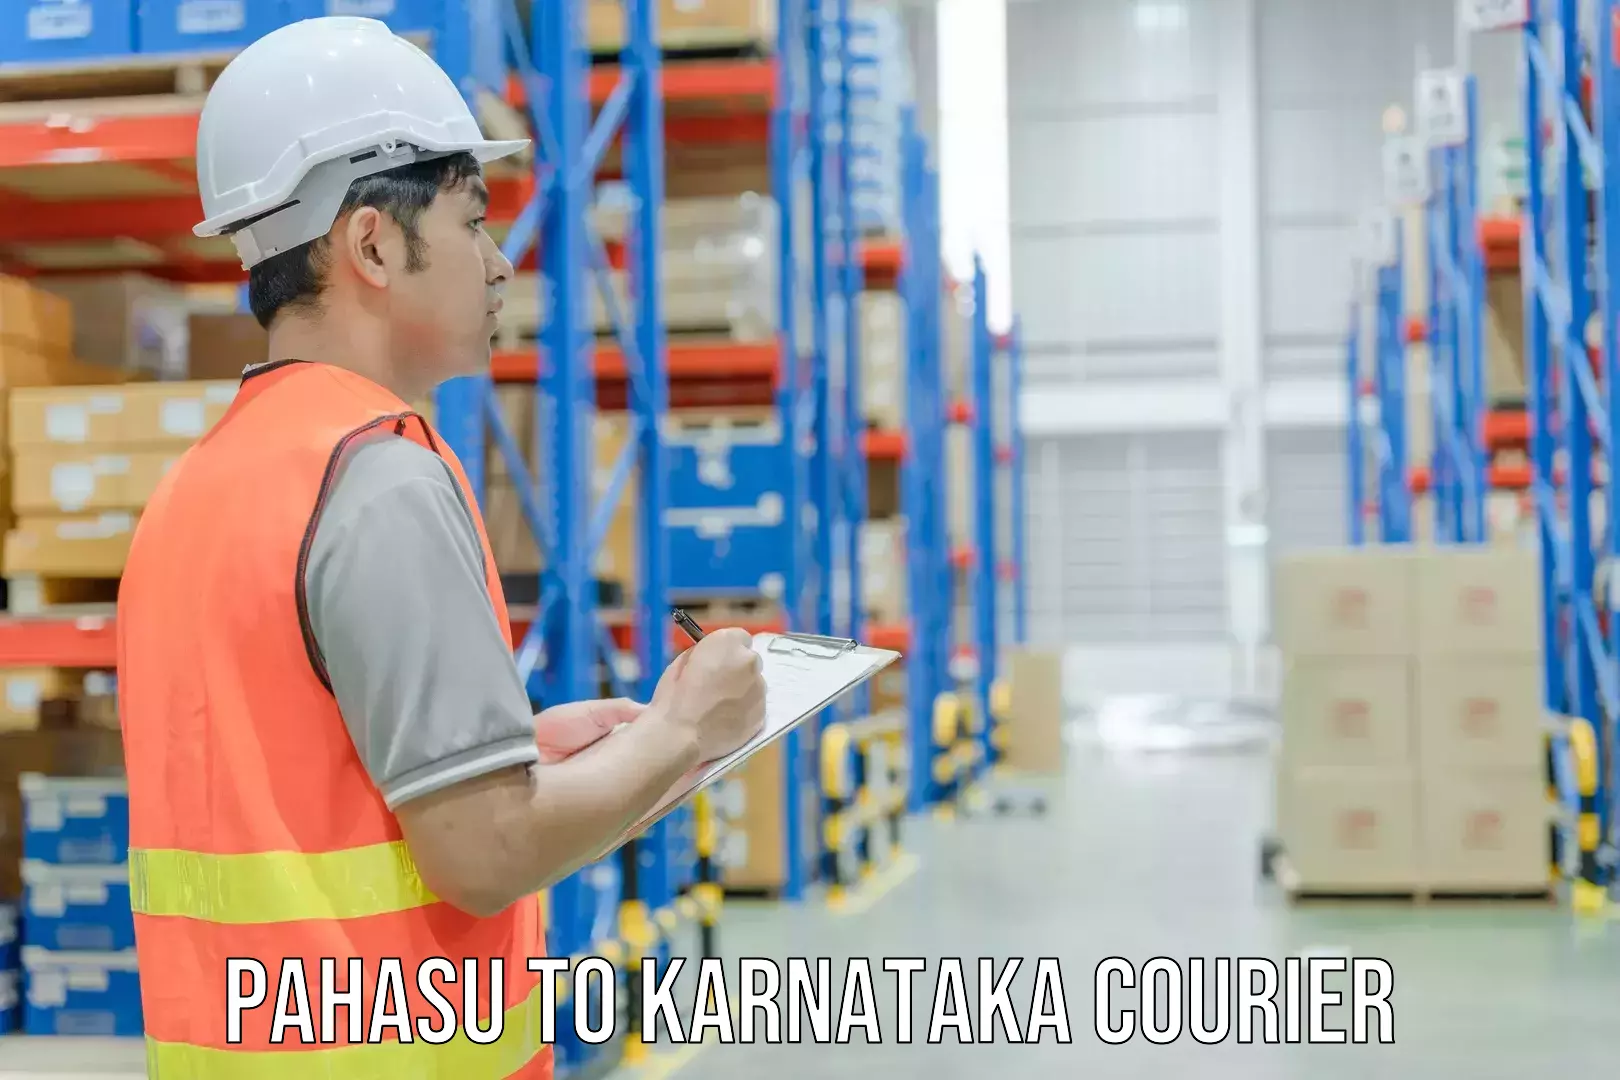 Logistics service provider Pahasu to Karnataka